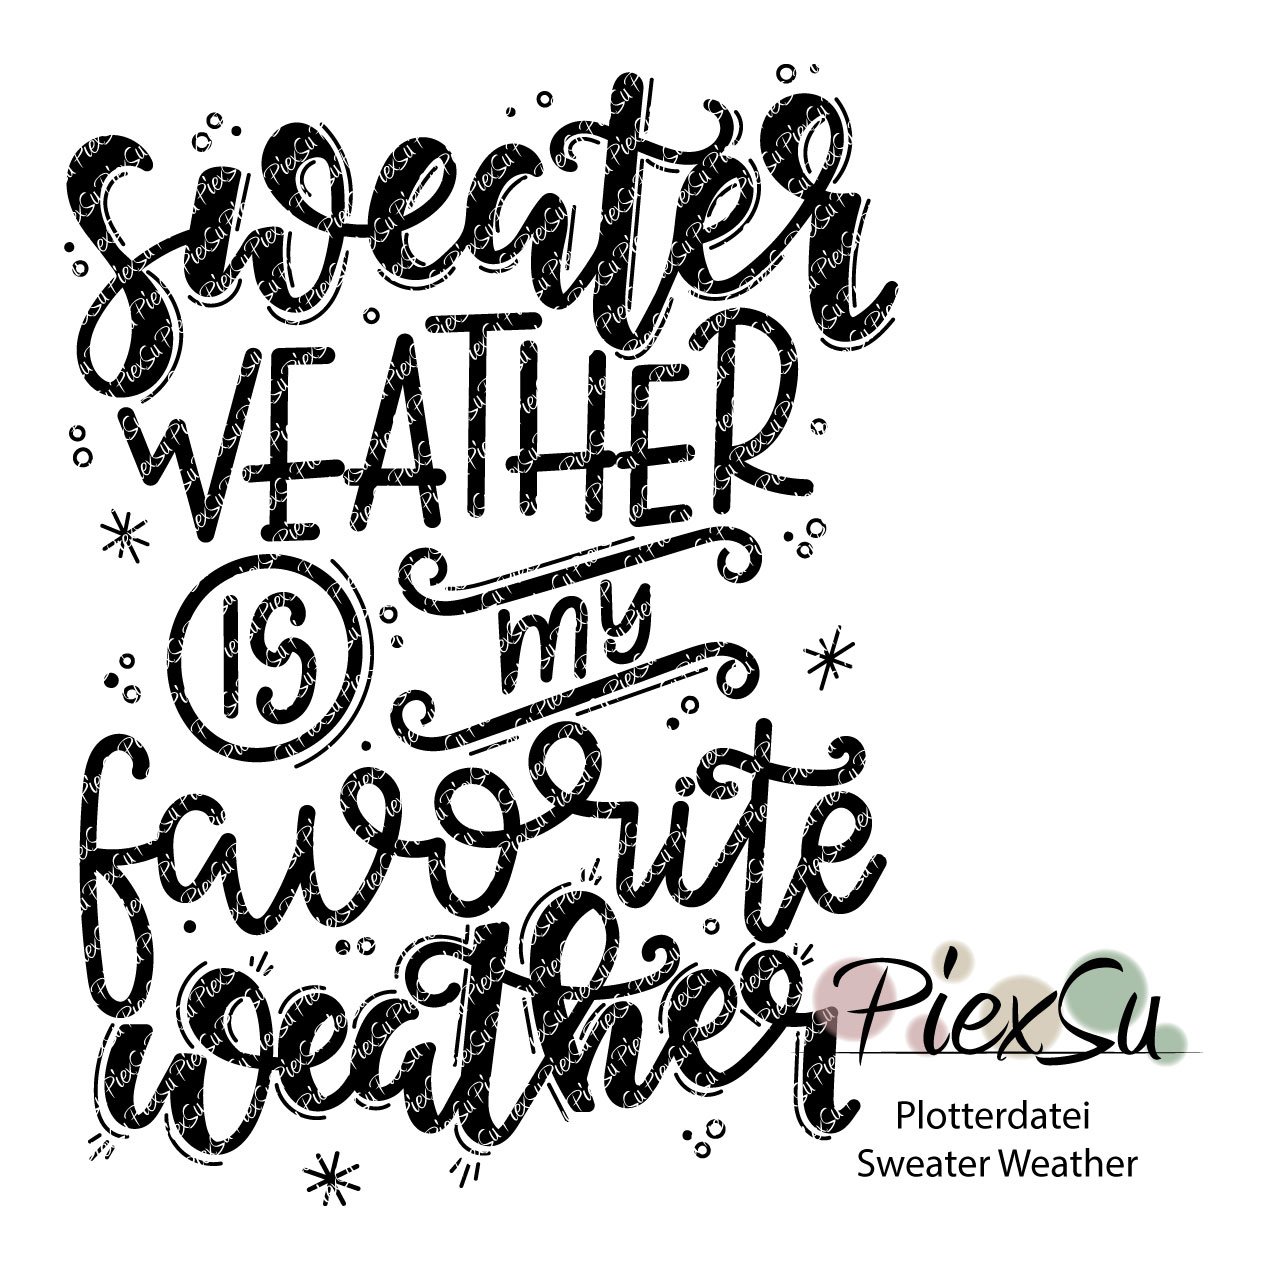 PiexSu-Plotterdatei-Sweater-Weather-Titelbild dxf svg plotten